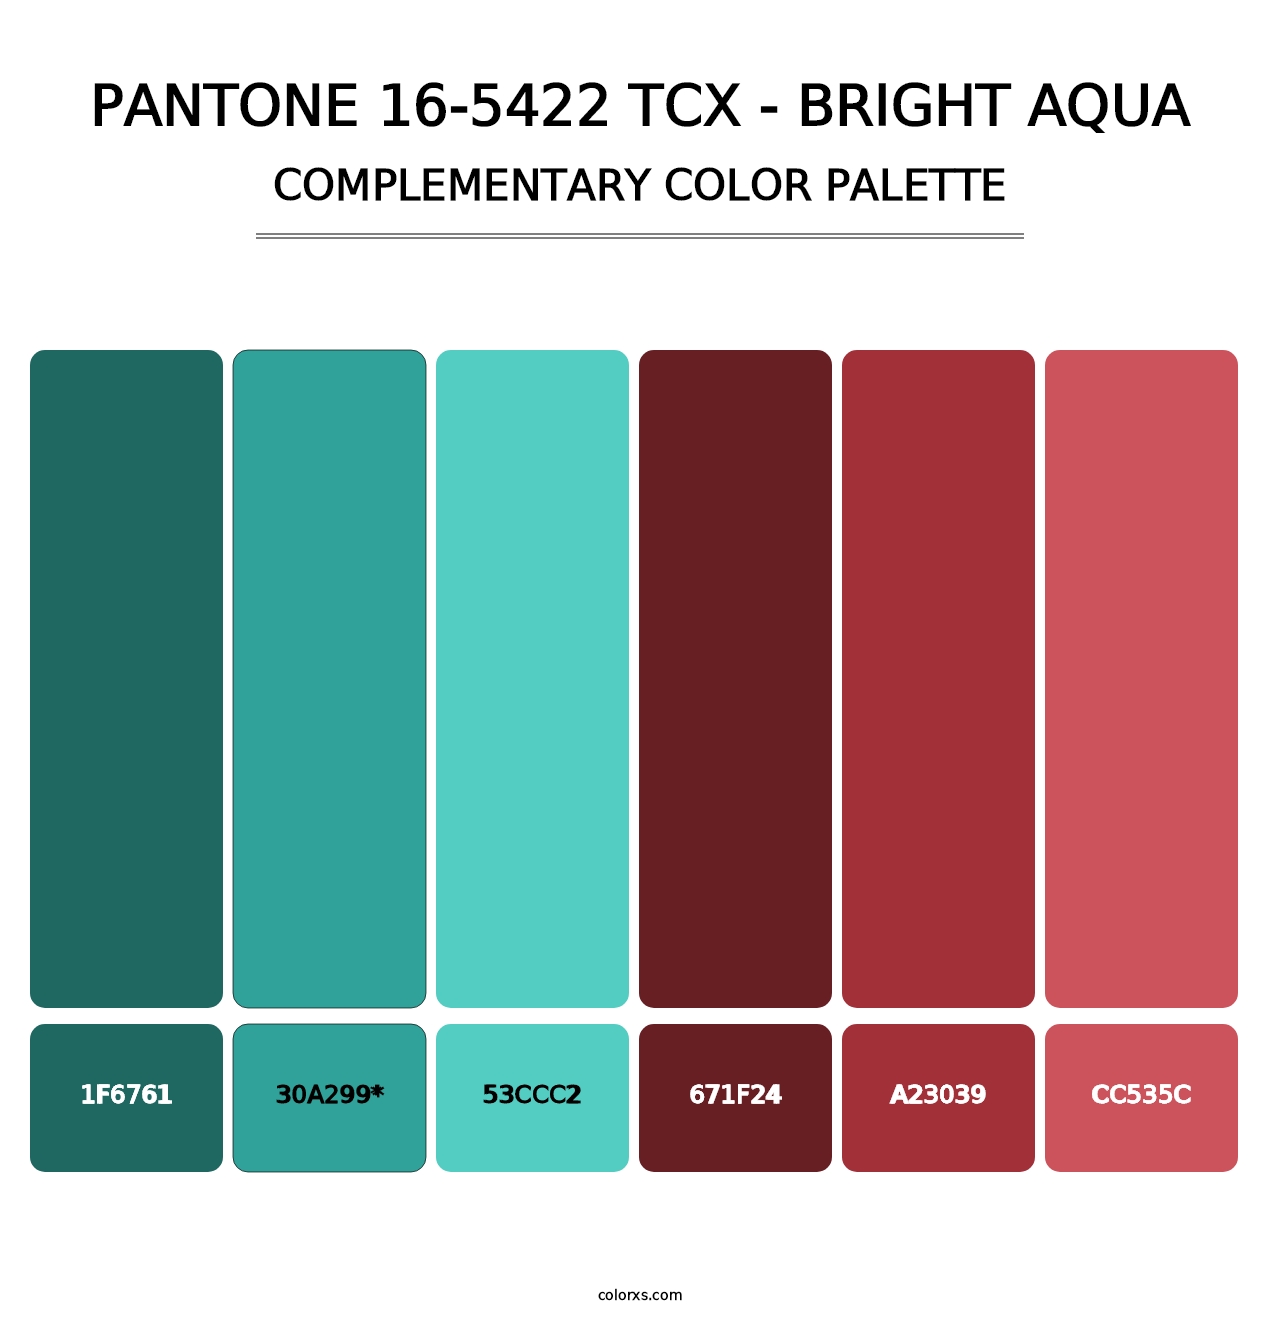 PANTONE 16-5422 TCX - Bright Aqua - Complementary Color Palette